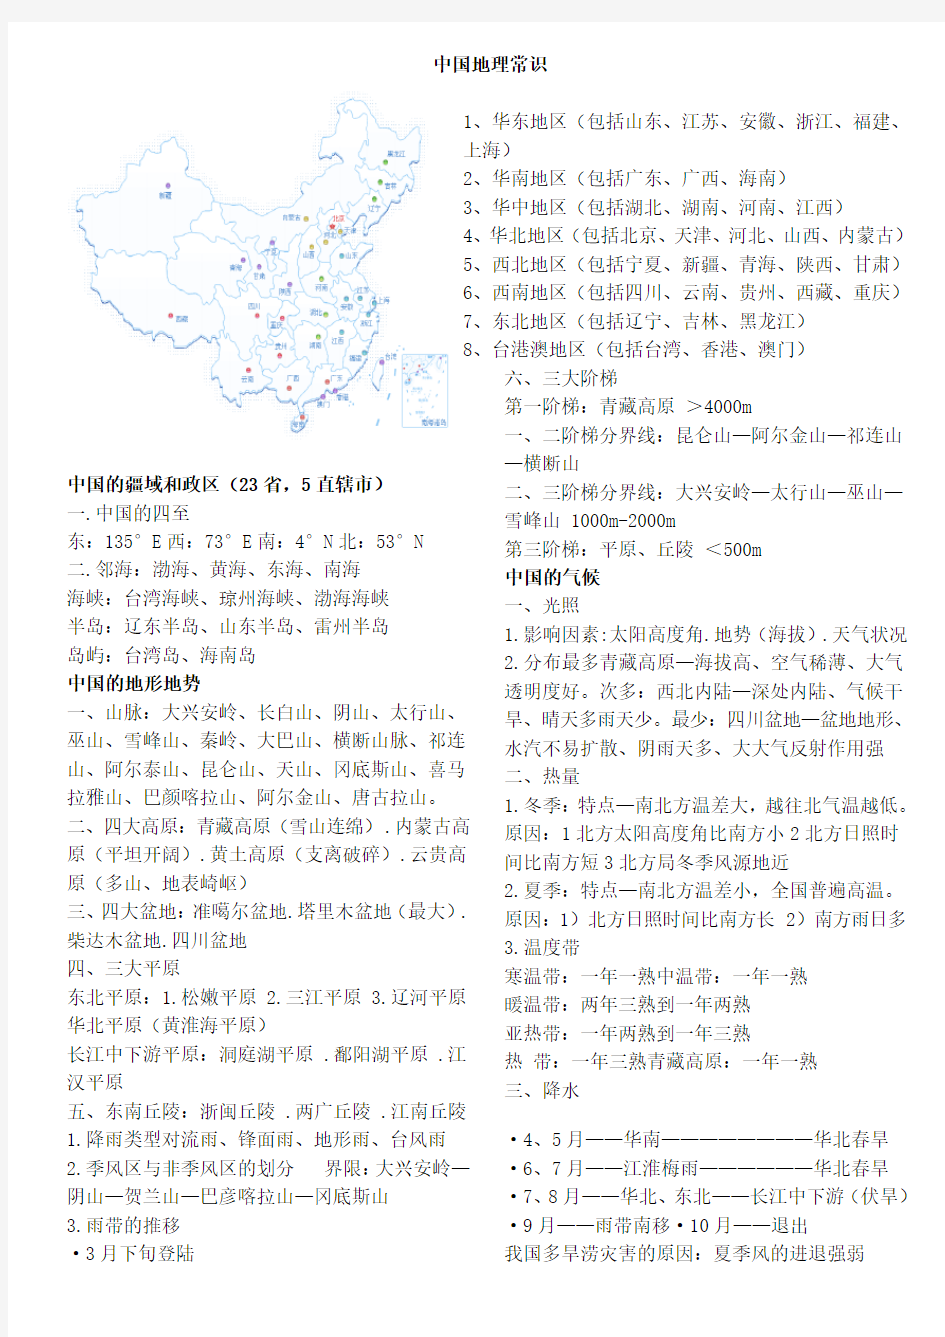 中国地理常识